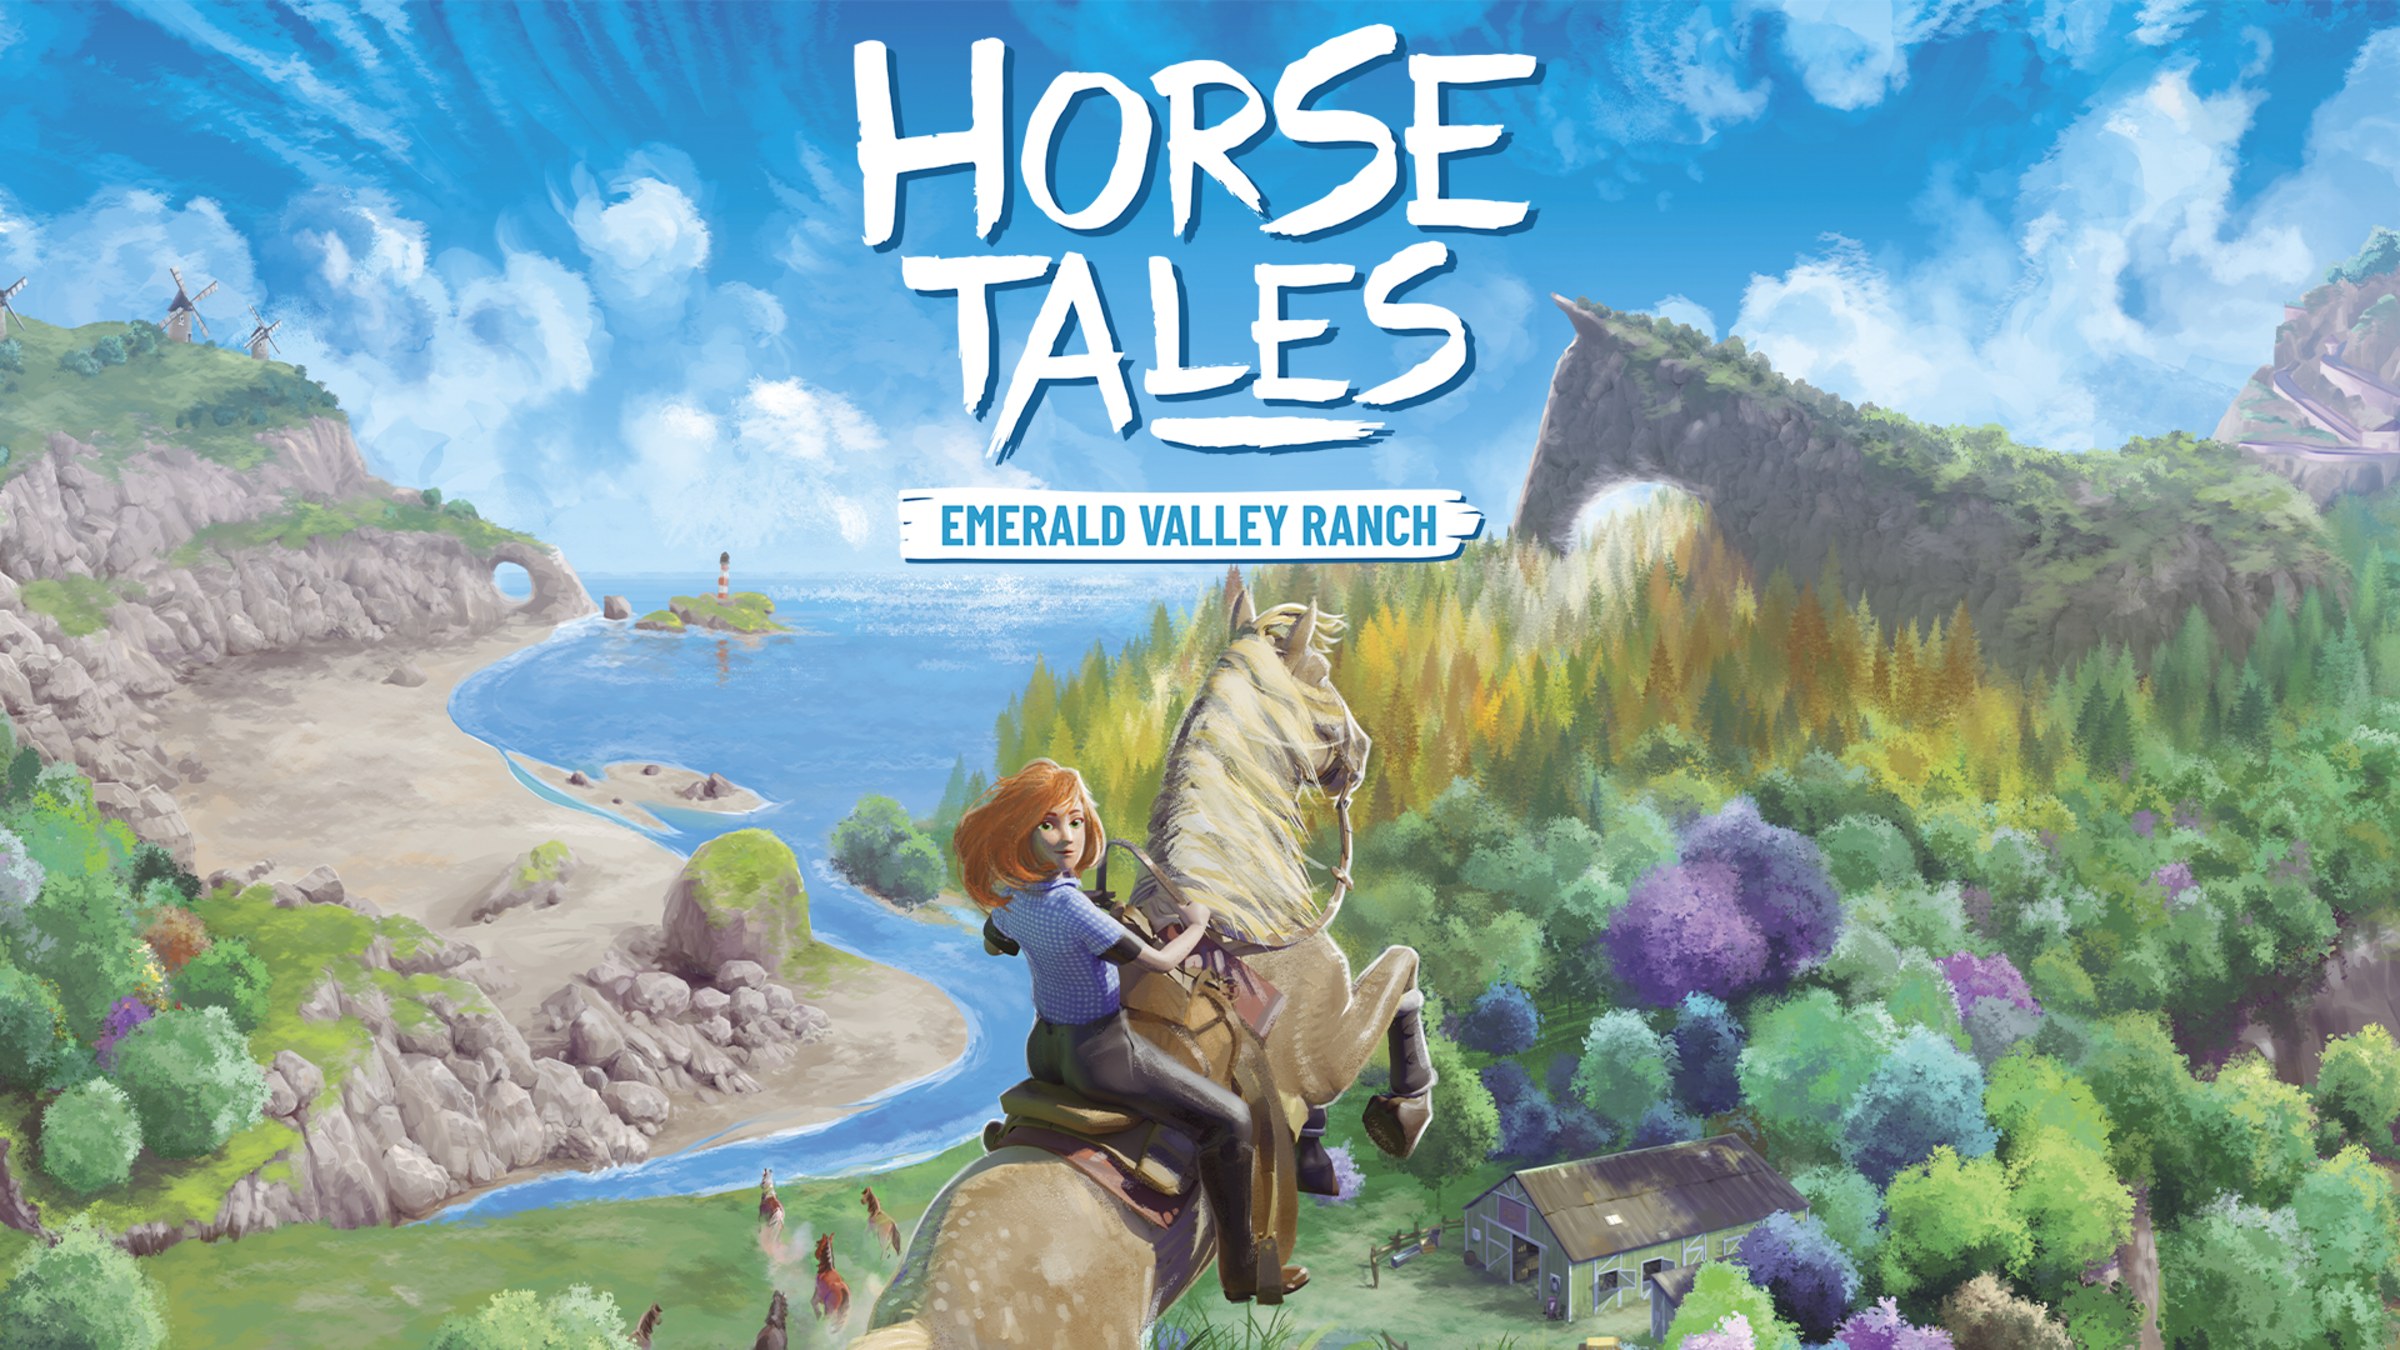 &#91;ULASAN&#93; Horse Tales: Emerald Valley Ranch, Game Open World yang Gak Boleh Dilewatkan